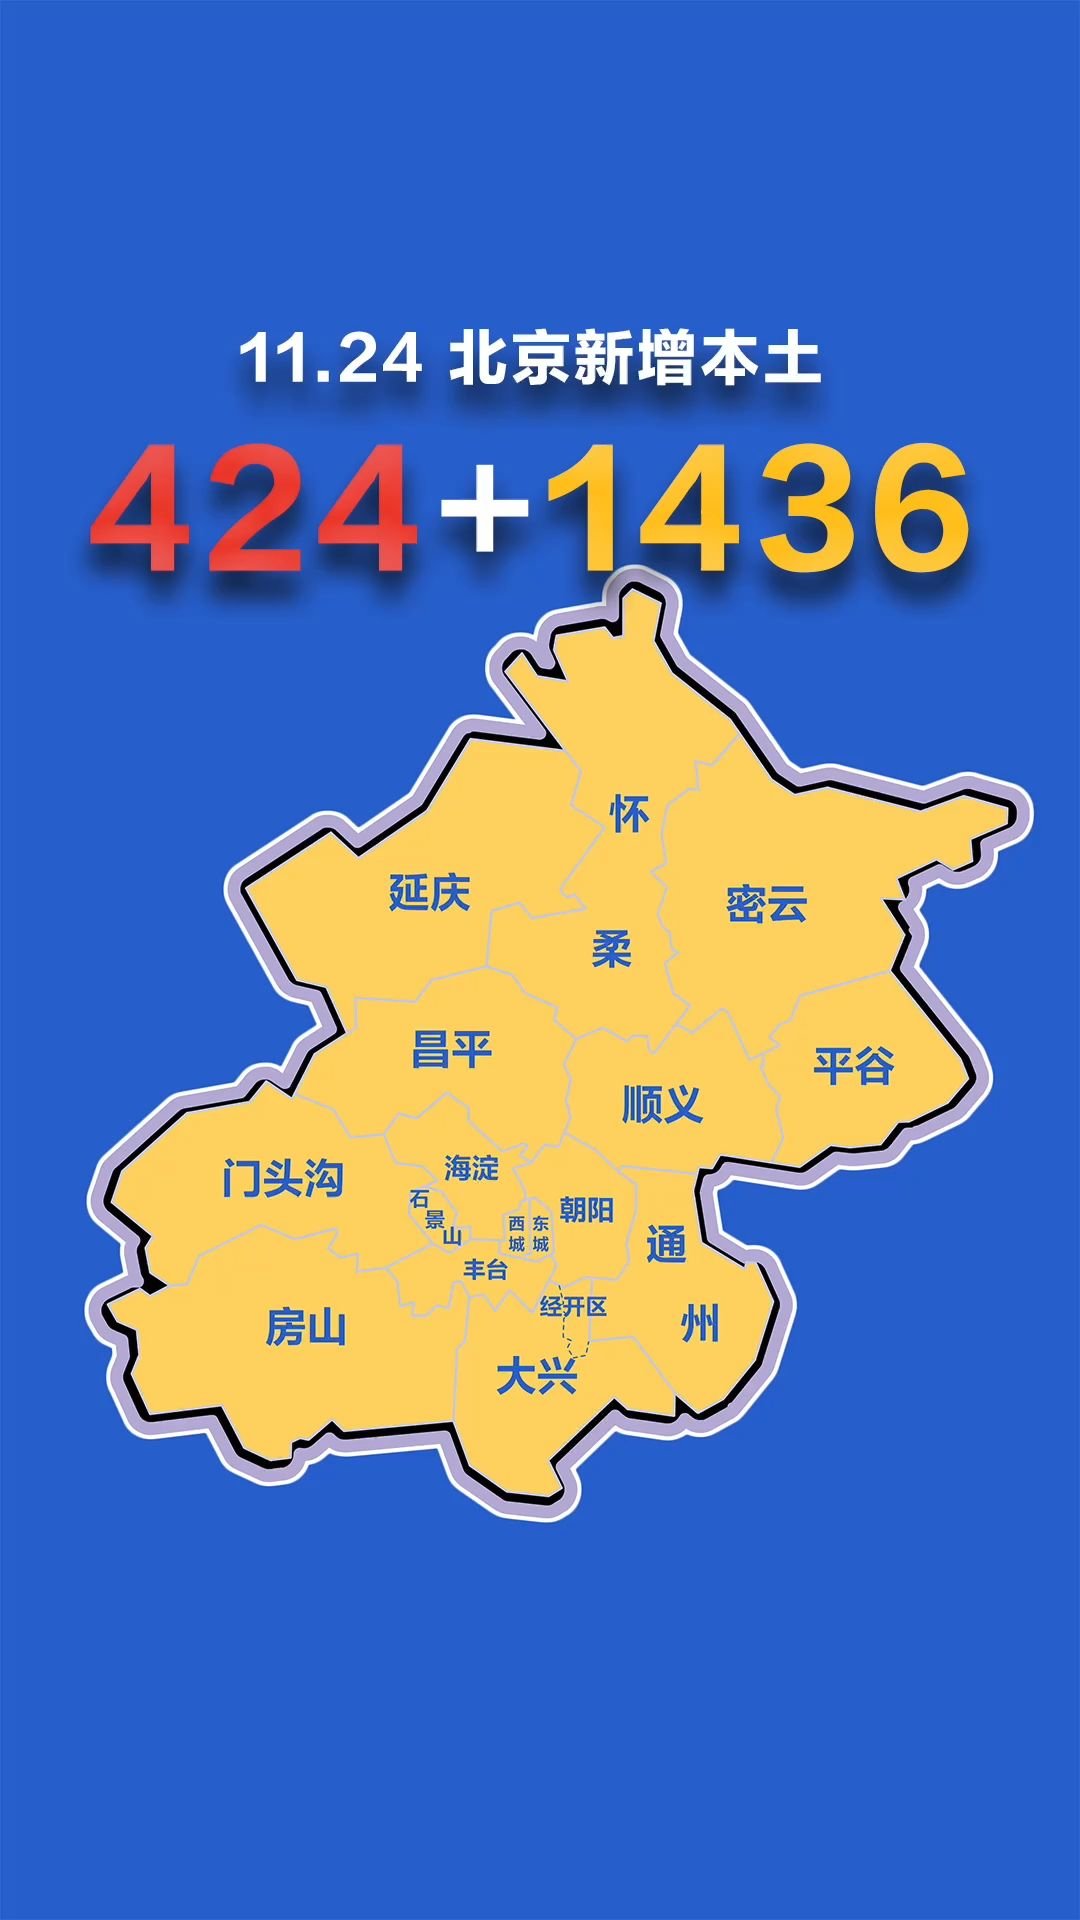 北京疫情动态地图:11月24日新增本土确诊424例,无症状1436例 据北京